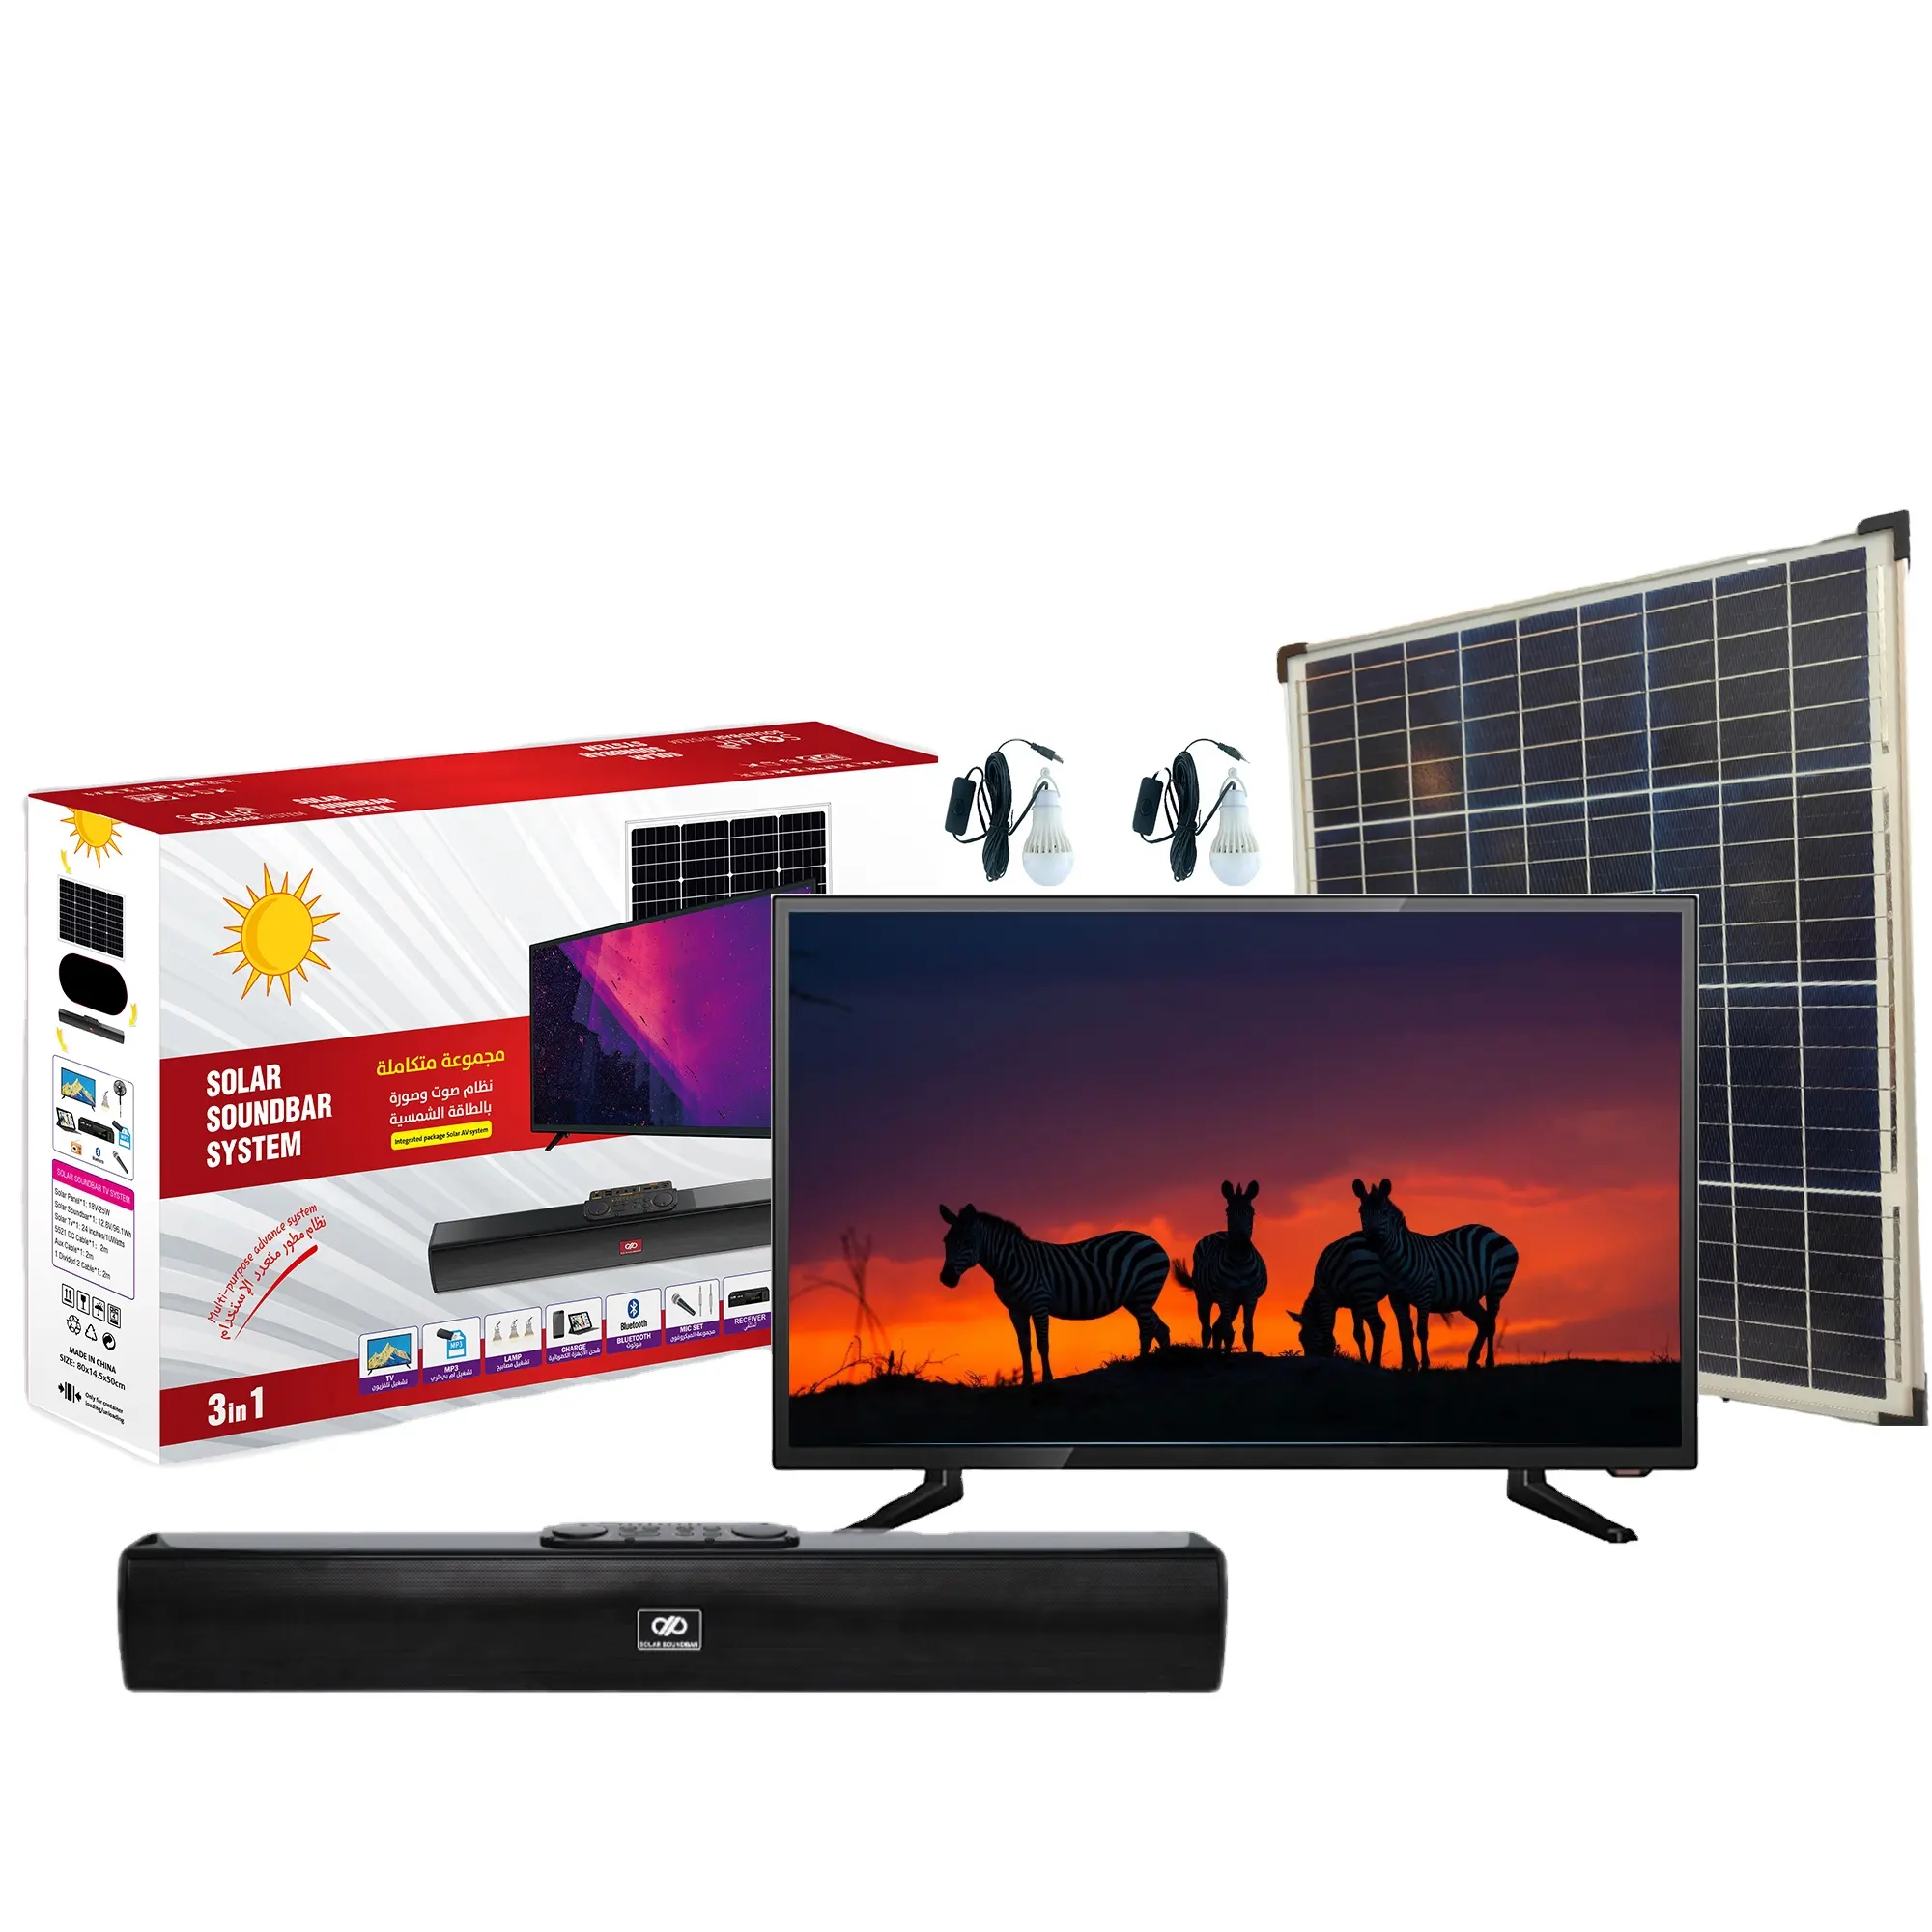 Pcv Generator TV Soundbar tenaga surya, Speaker efek panel surya suara HiFi energi baru, luar ruangan sempurna